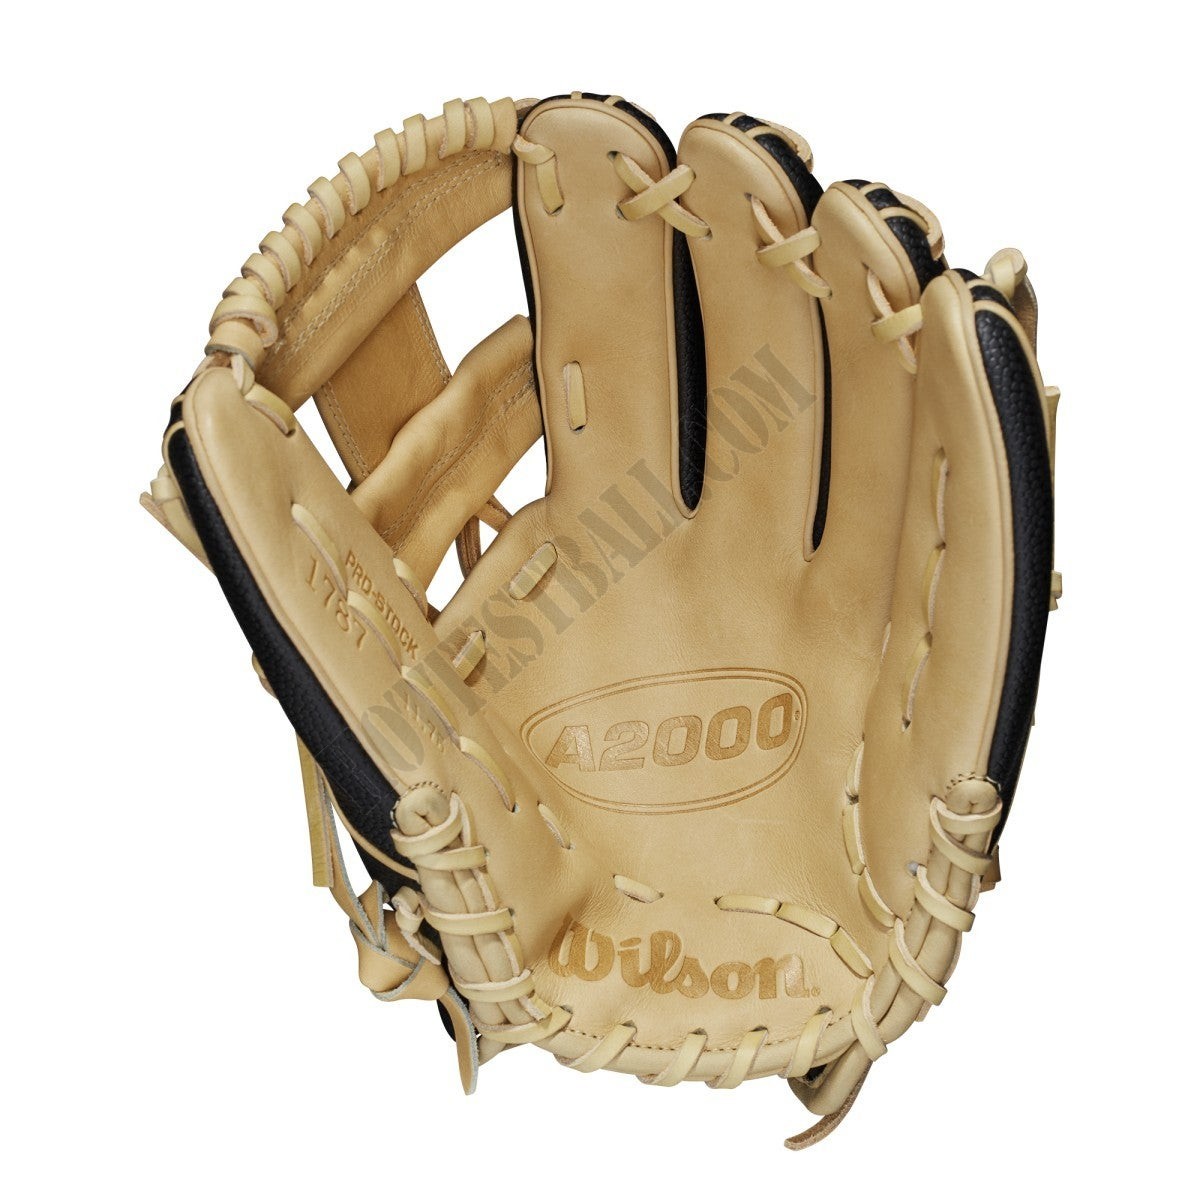 2021 A2000 1787SS 11.75" Infield Baseball Glove ● Wilson Promotions - -2